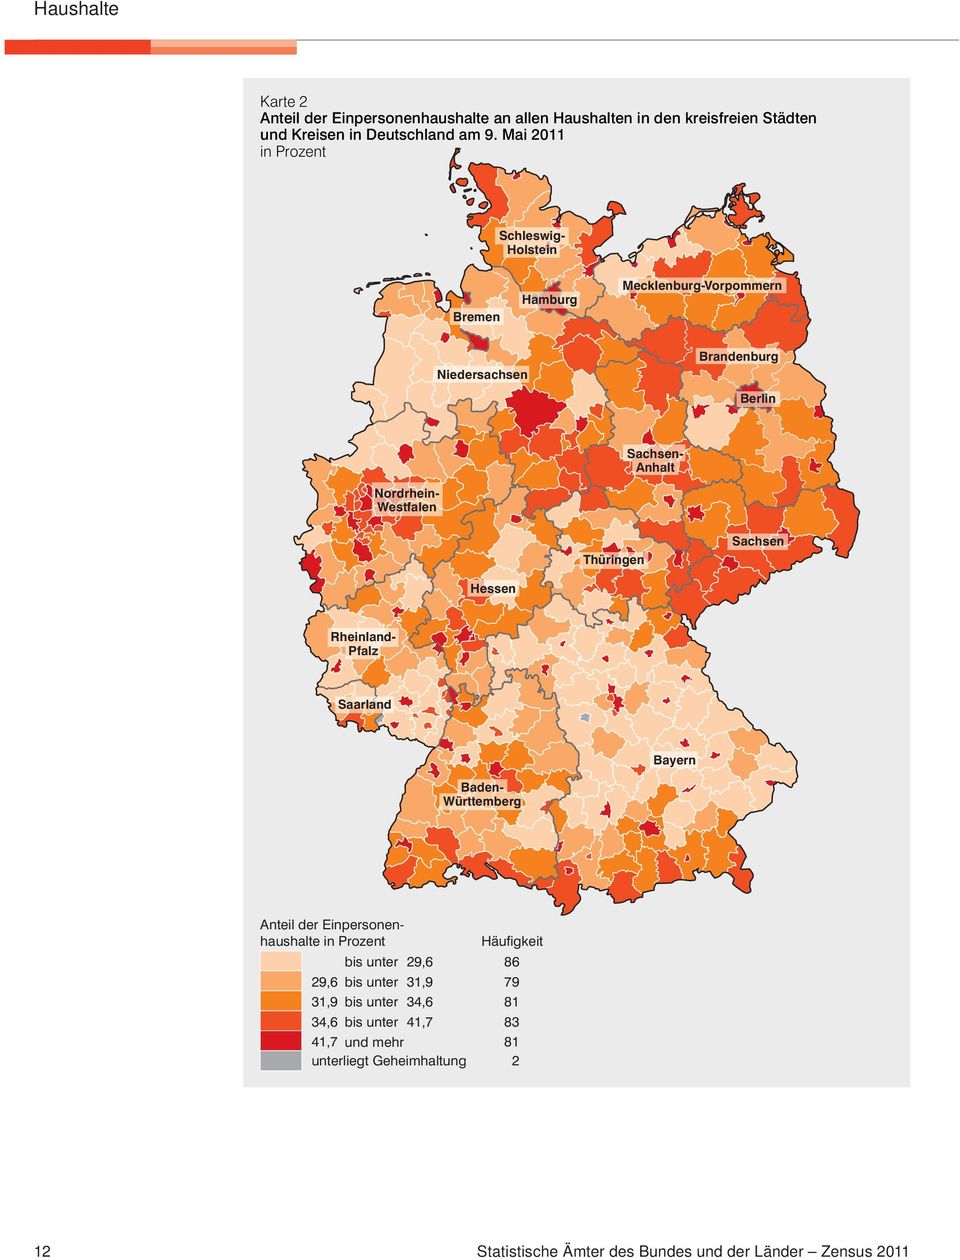 Westfalen Thüringen Sachsen Hessen Rheinland- Pfalz Saarland Bayern Baden- Württemberg Anteil der Einpersonenhaushalte 29,6 29,6 31,9